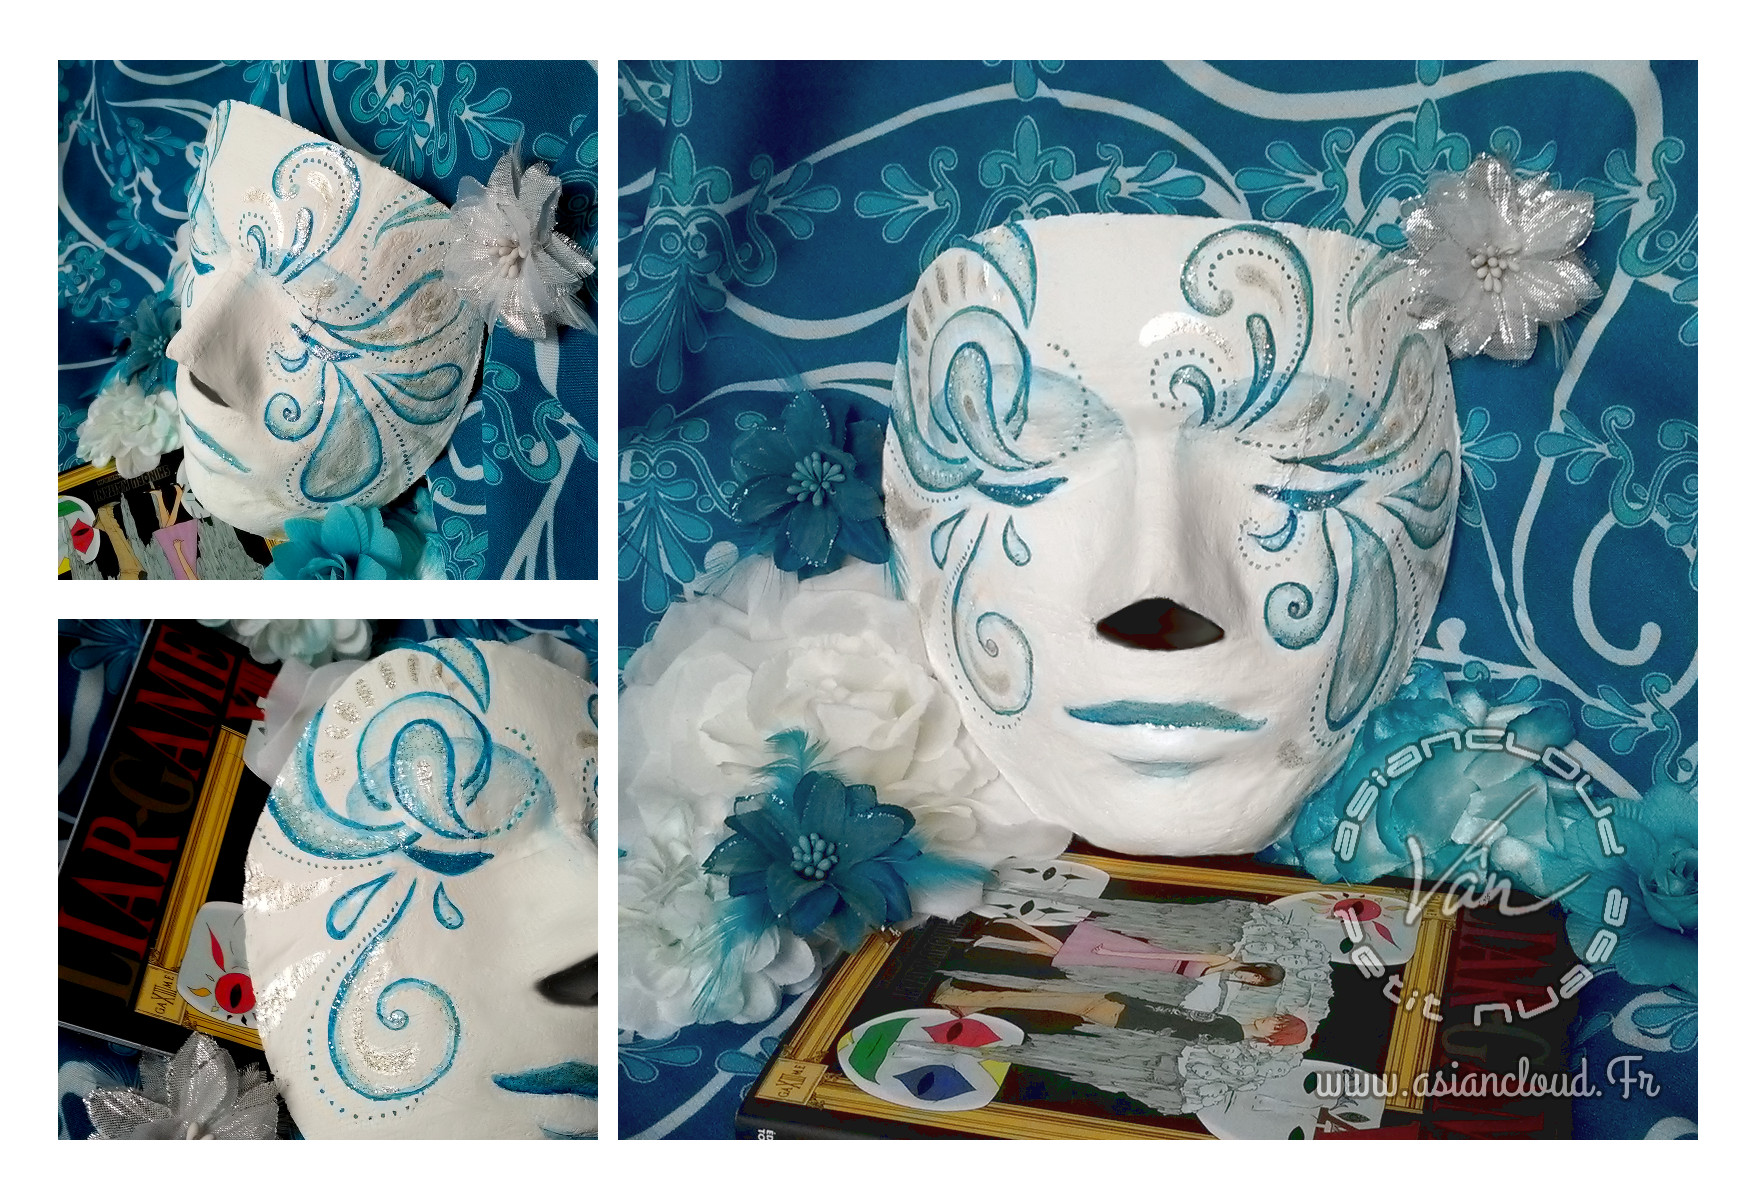 Gagnante du concours instagram Rougier & Plé A vos masques, masque en bandes plâtrées et volutes bleu et argent